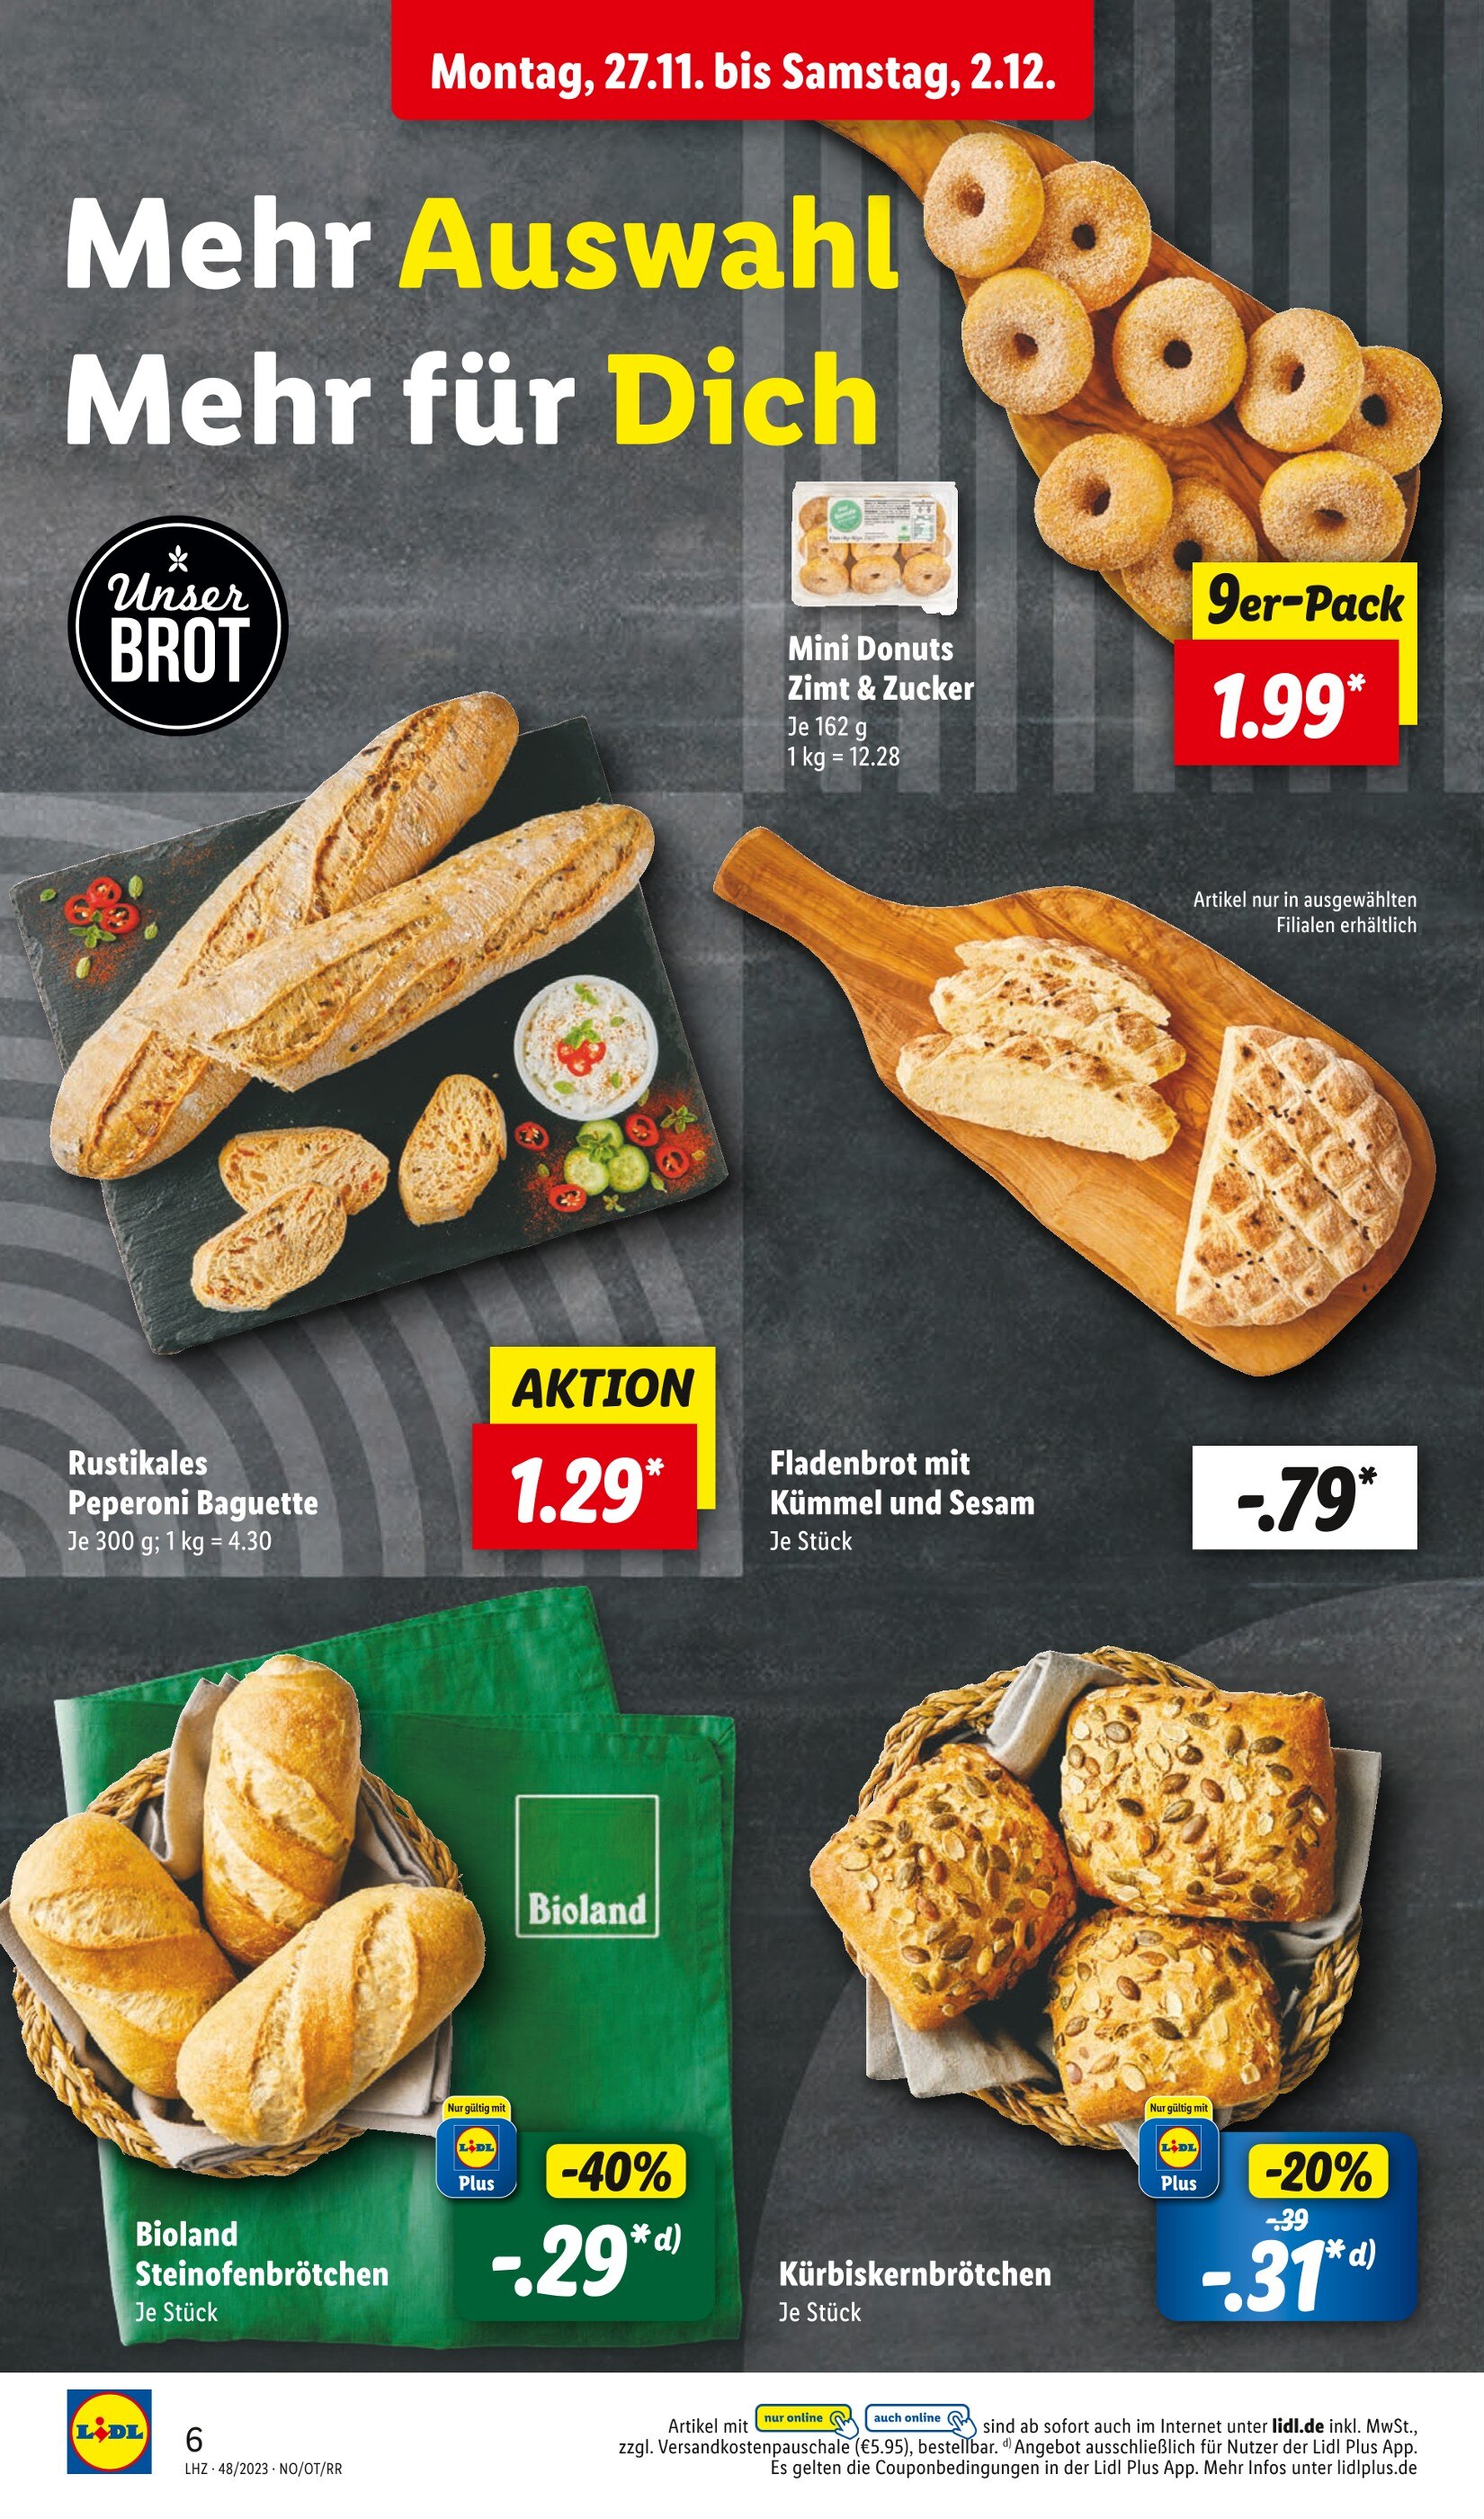 Baguette kaufen in Essen - günstige Angebote in Essen